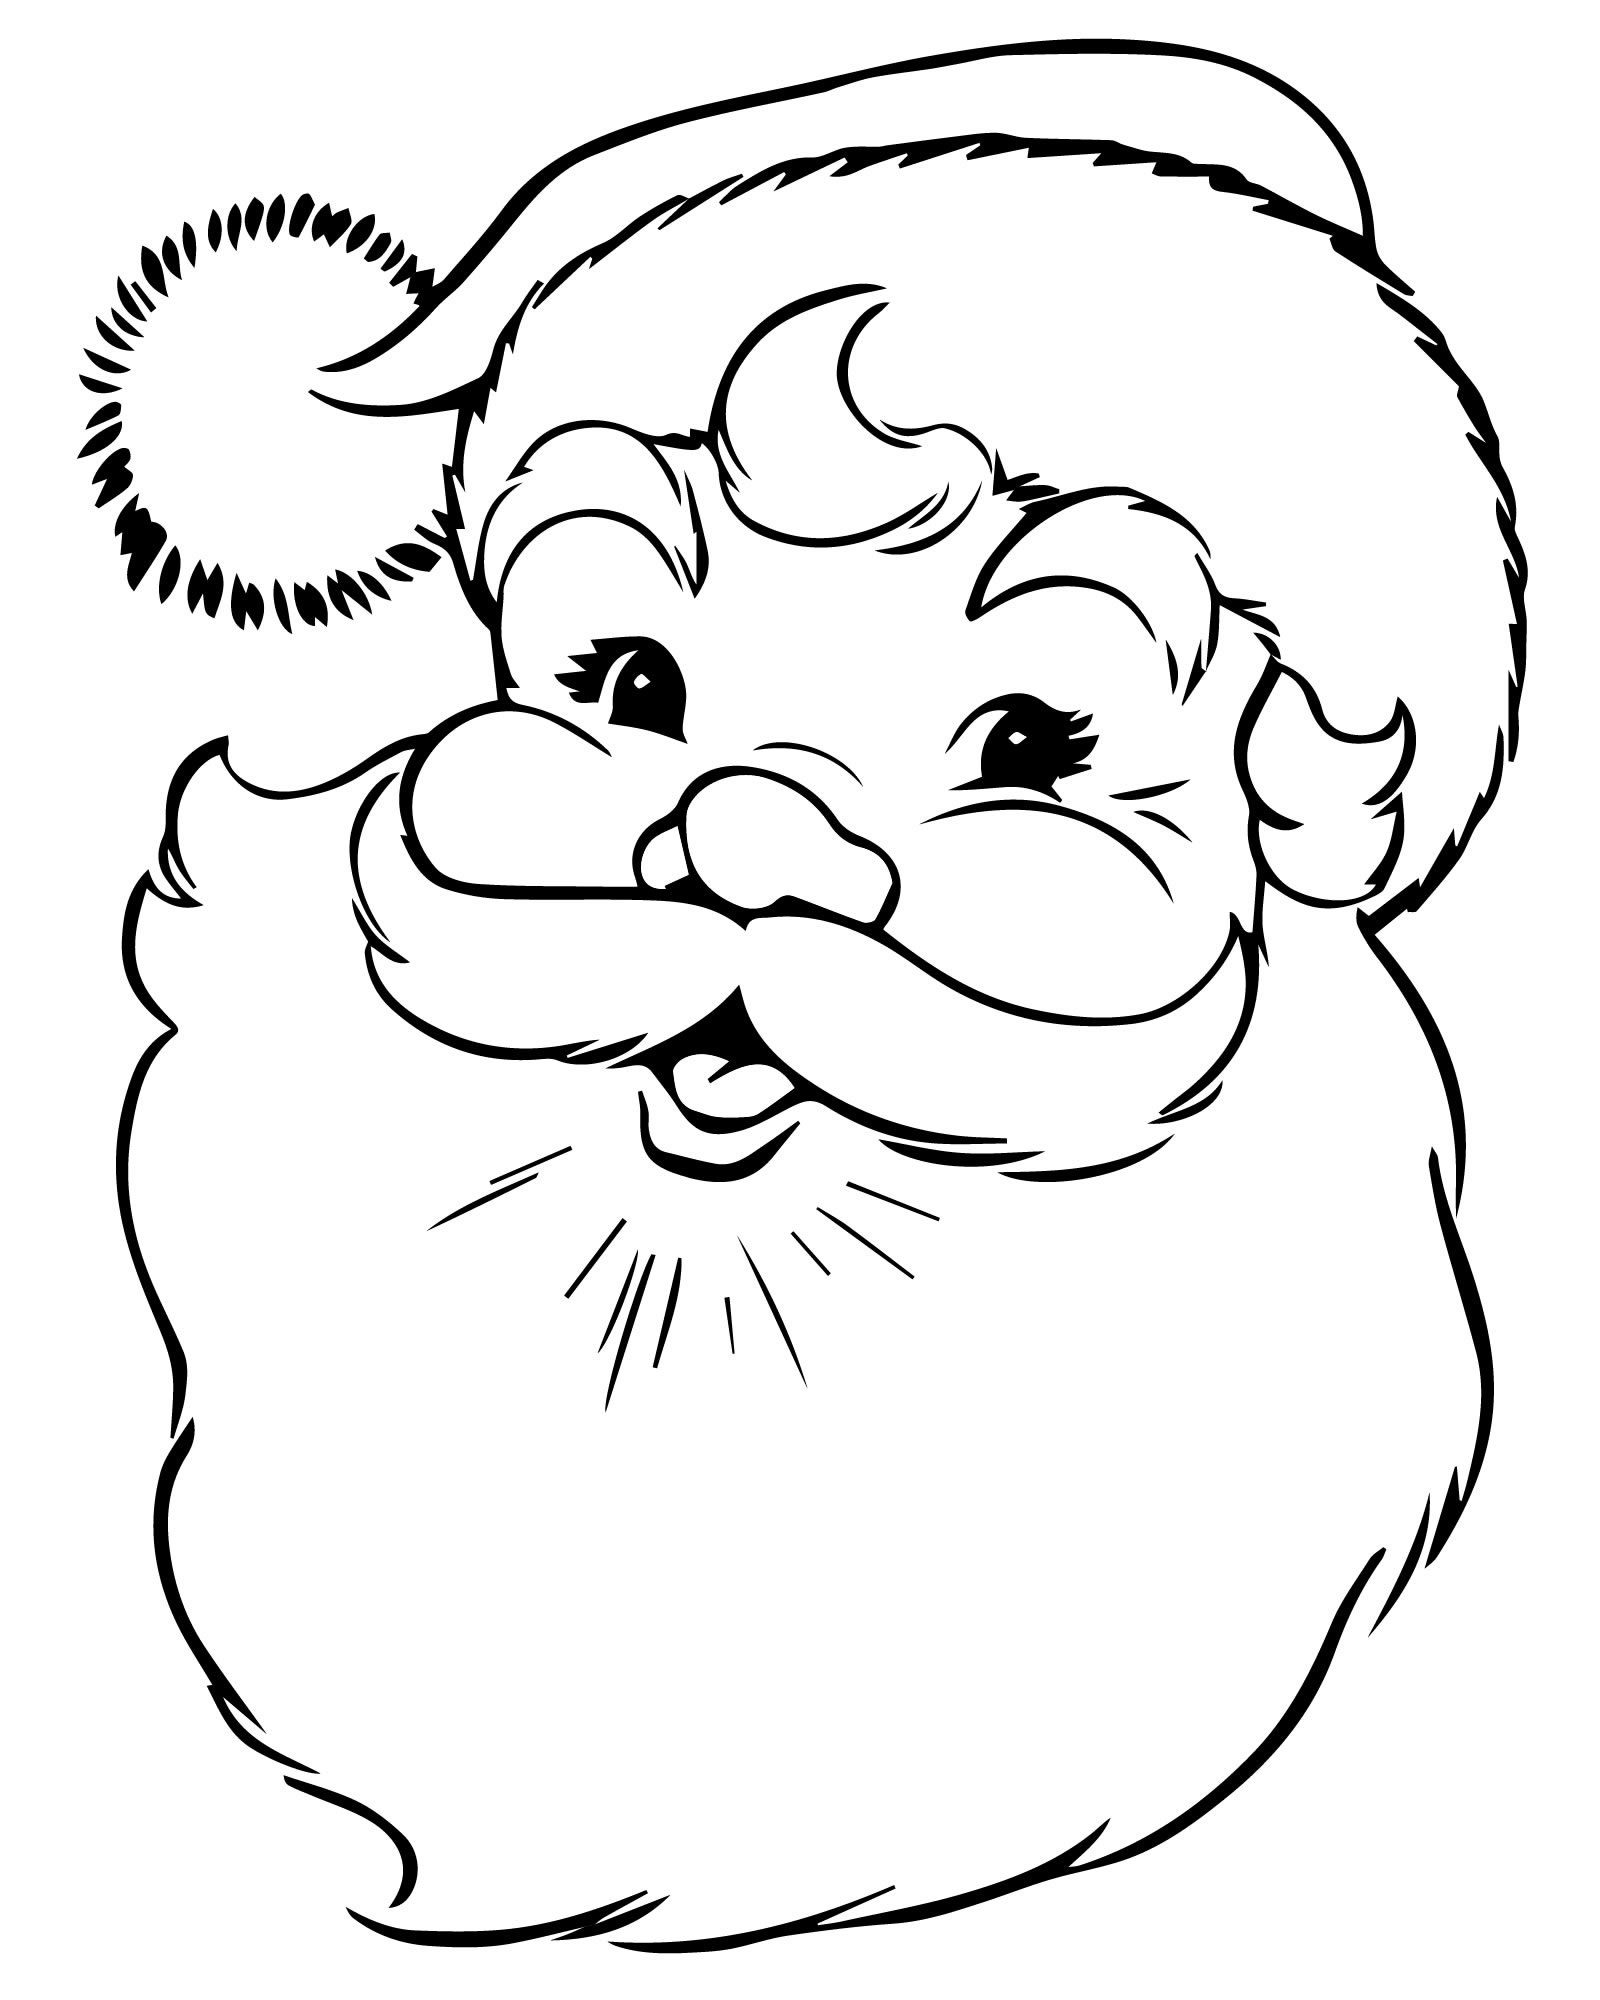 Портрет Санта-Клауса раскраска для детей